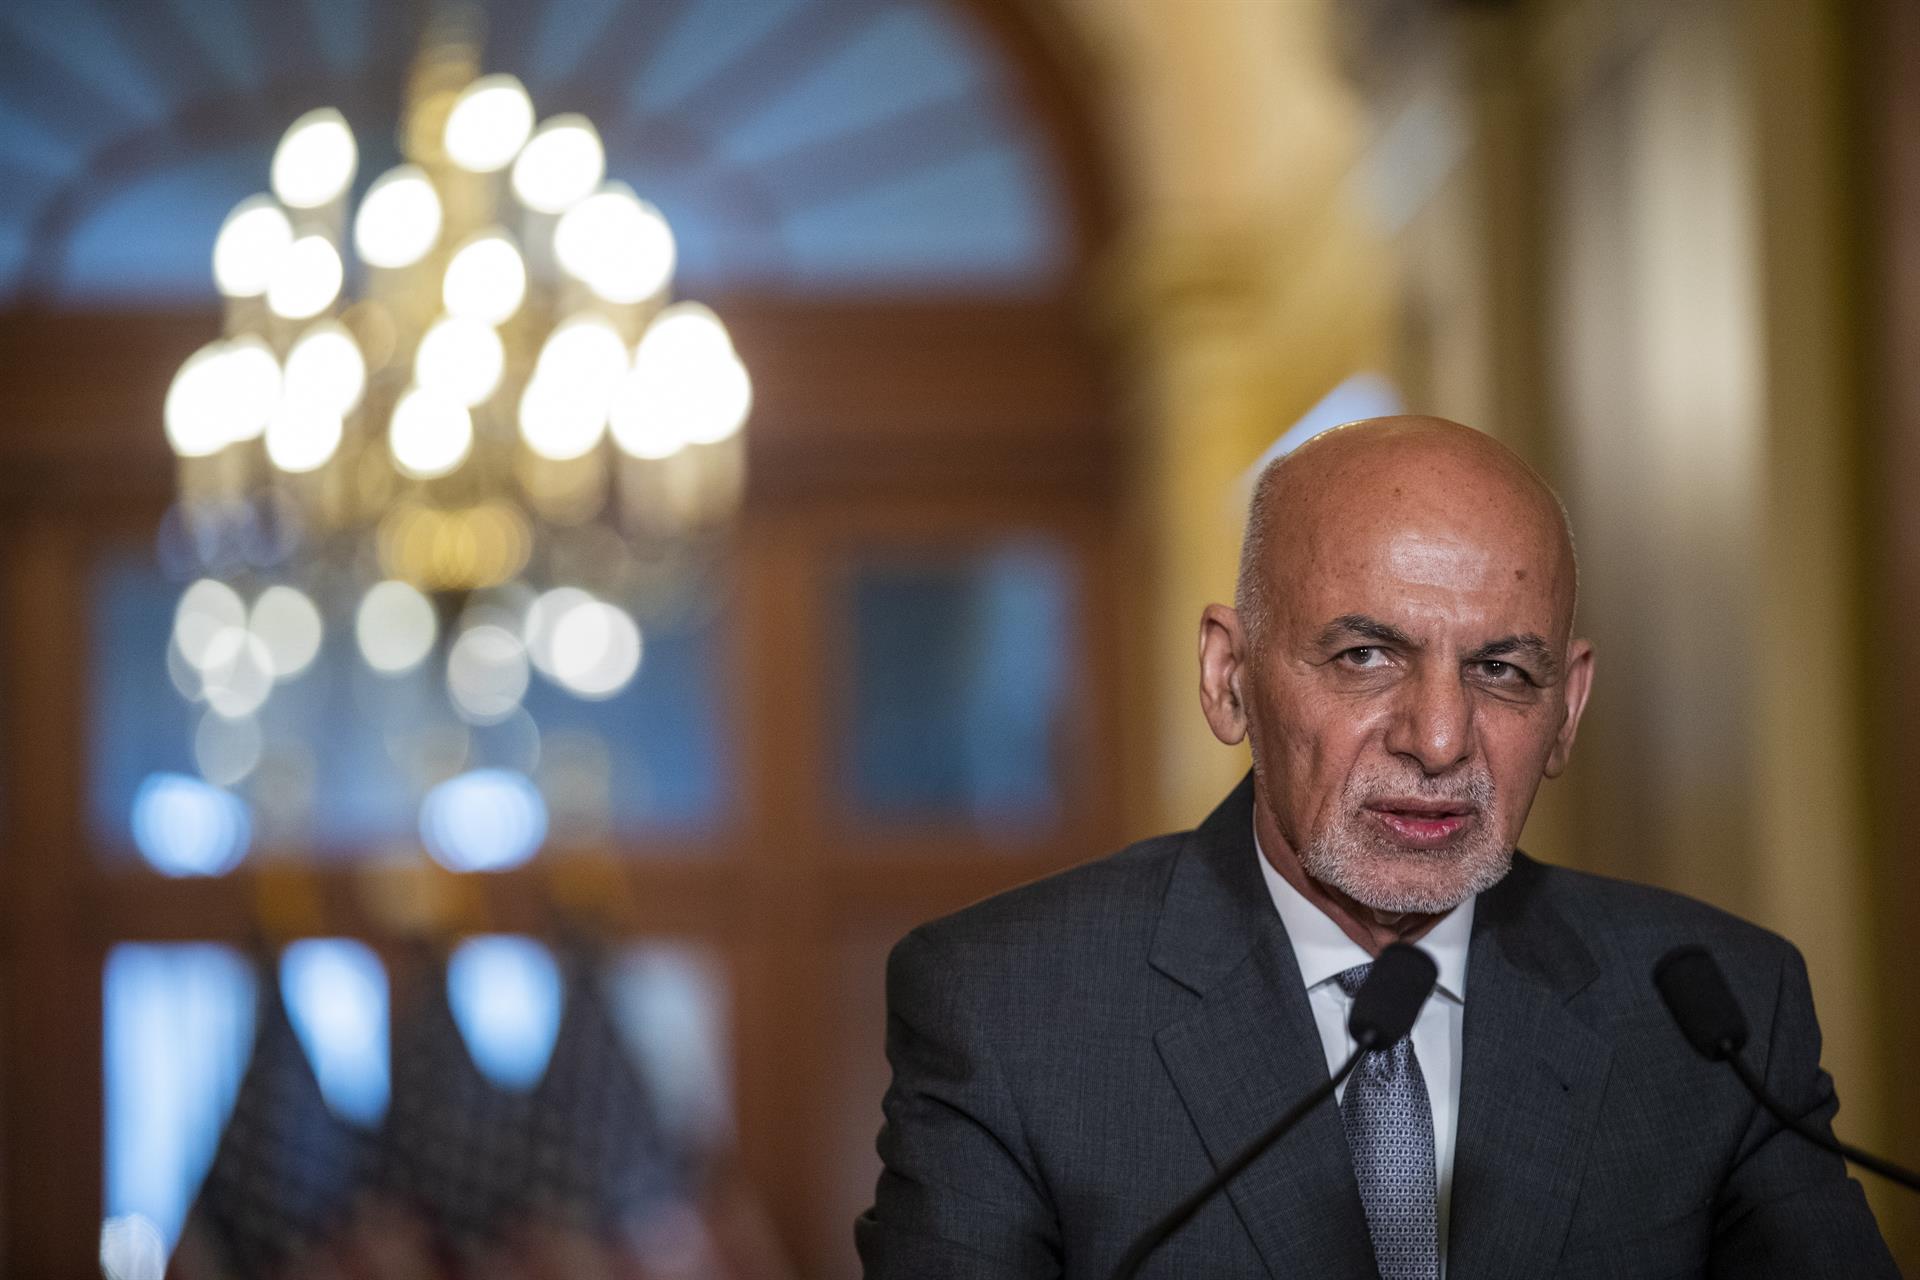 El presidente afgano asegura que la prioridad ahora es removilizar las tropas